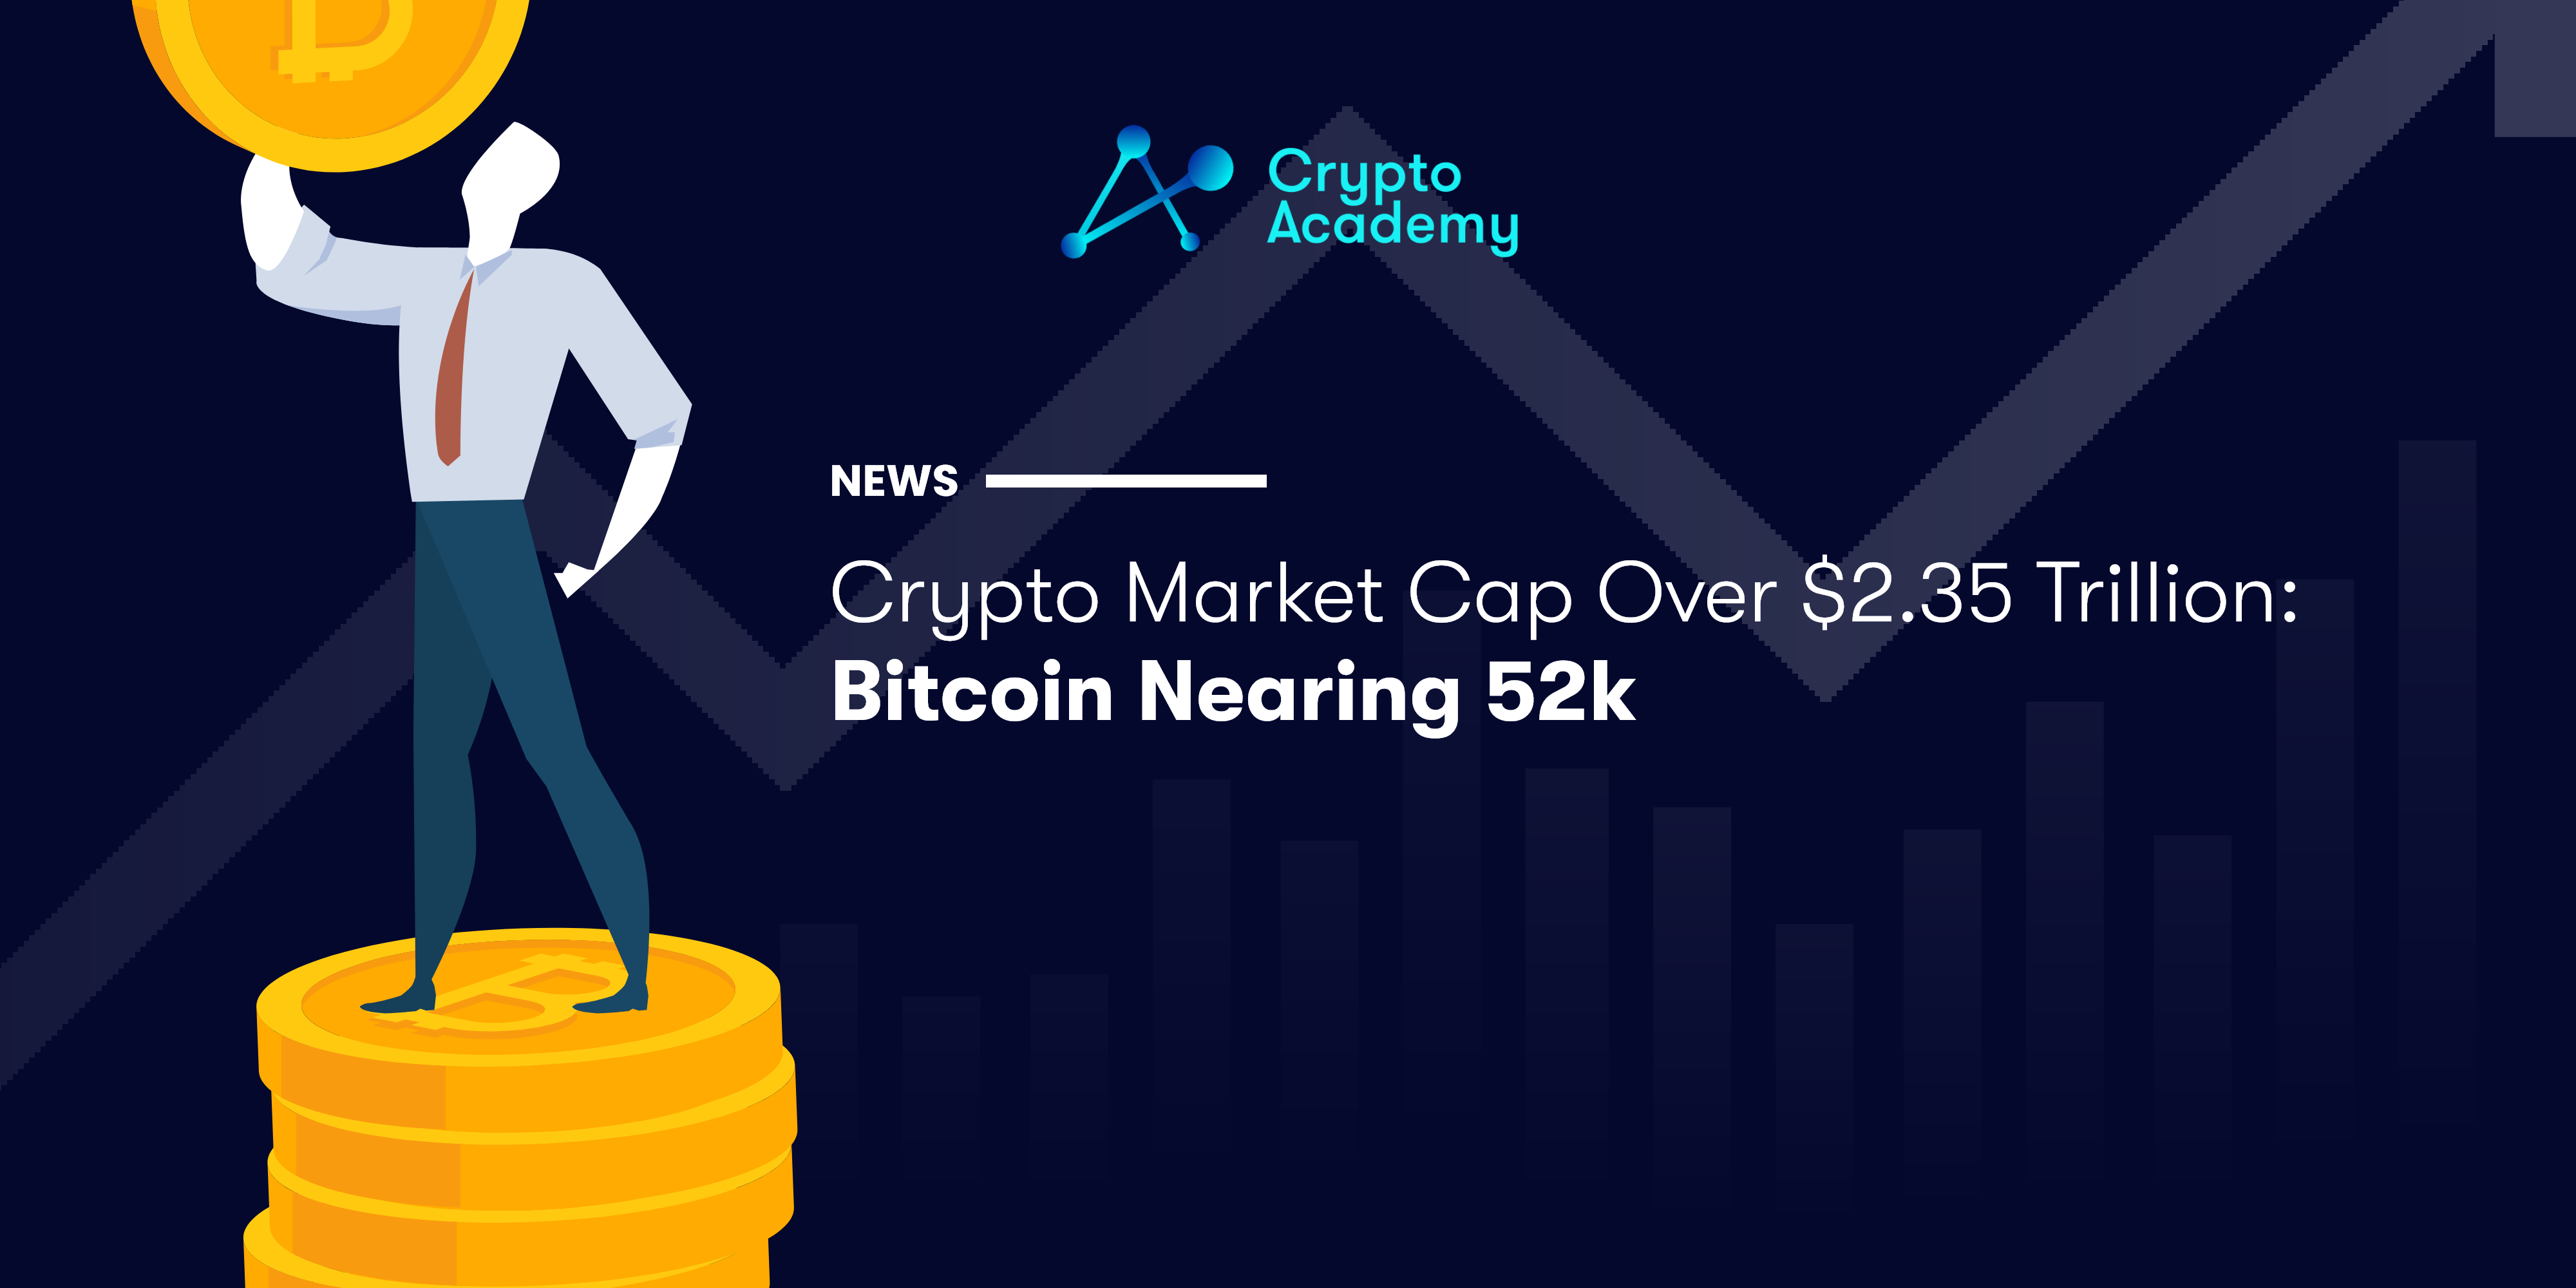 Crypto Market Cap Over $2.35 Trillion: Bitcoin Nearing 52k